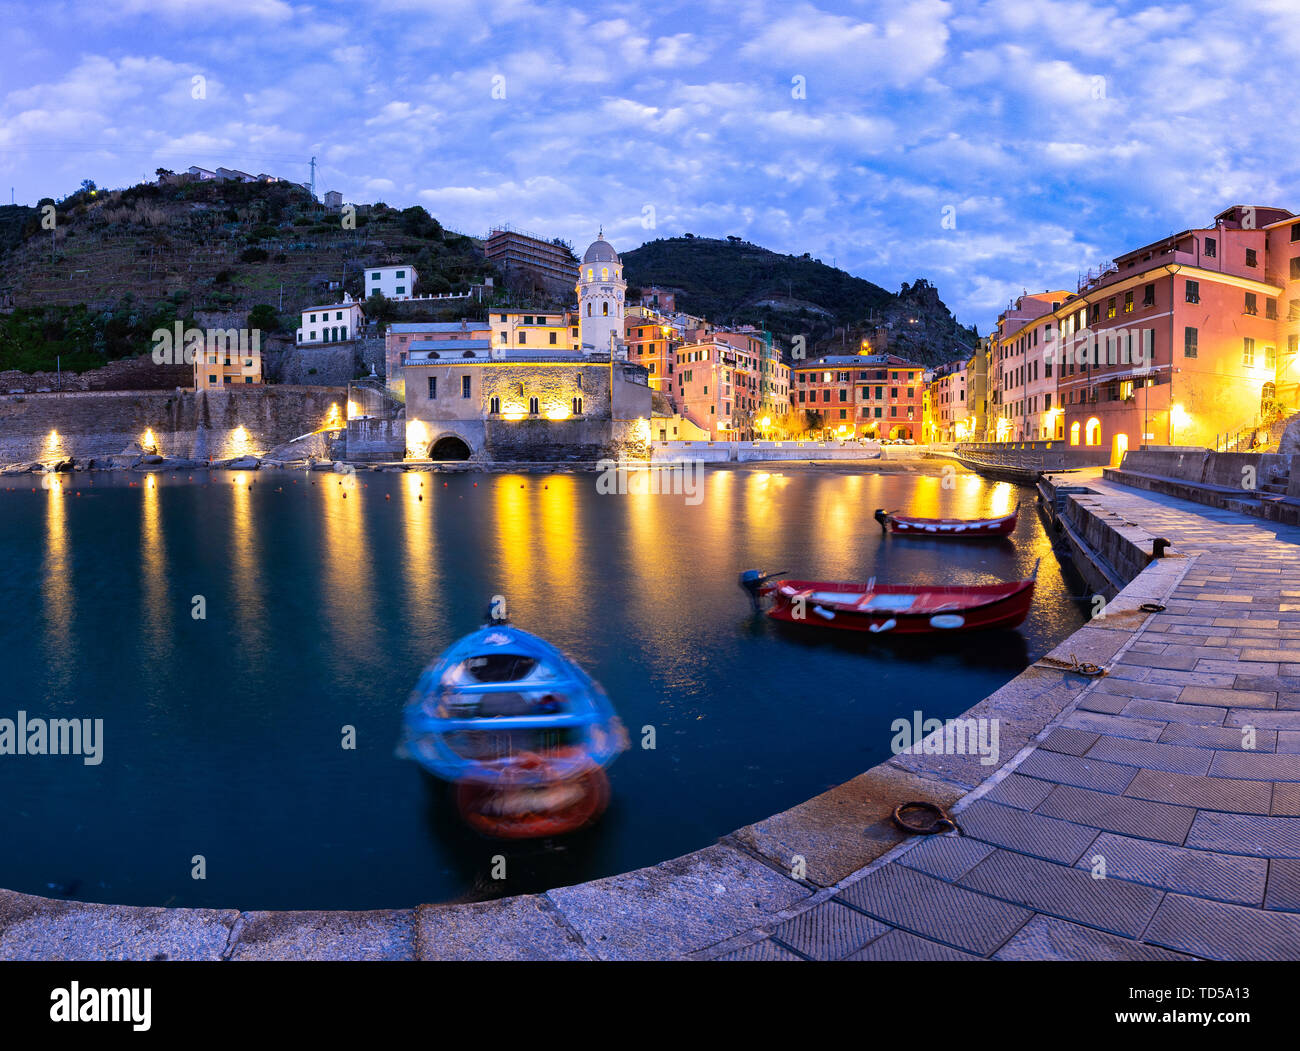 Bateaux amarrés dans le port de Vernazza au crépuscule, Cinque Terre, UNESCO World Heritage Site, Ligurie, Italie, Europe Banque D'Images